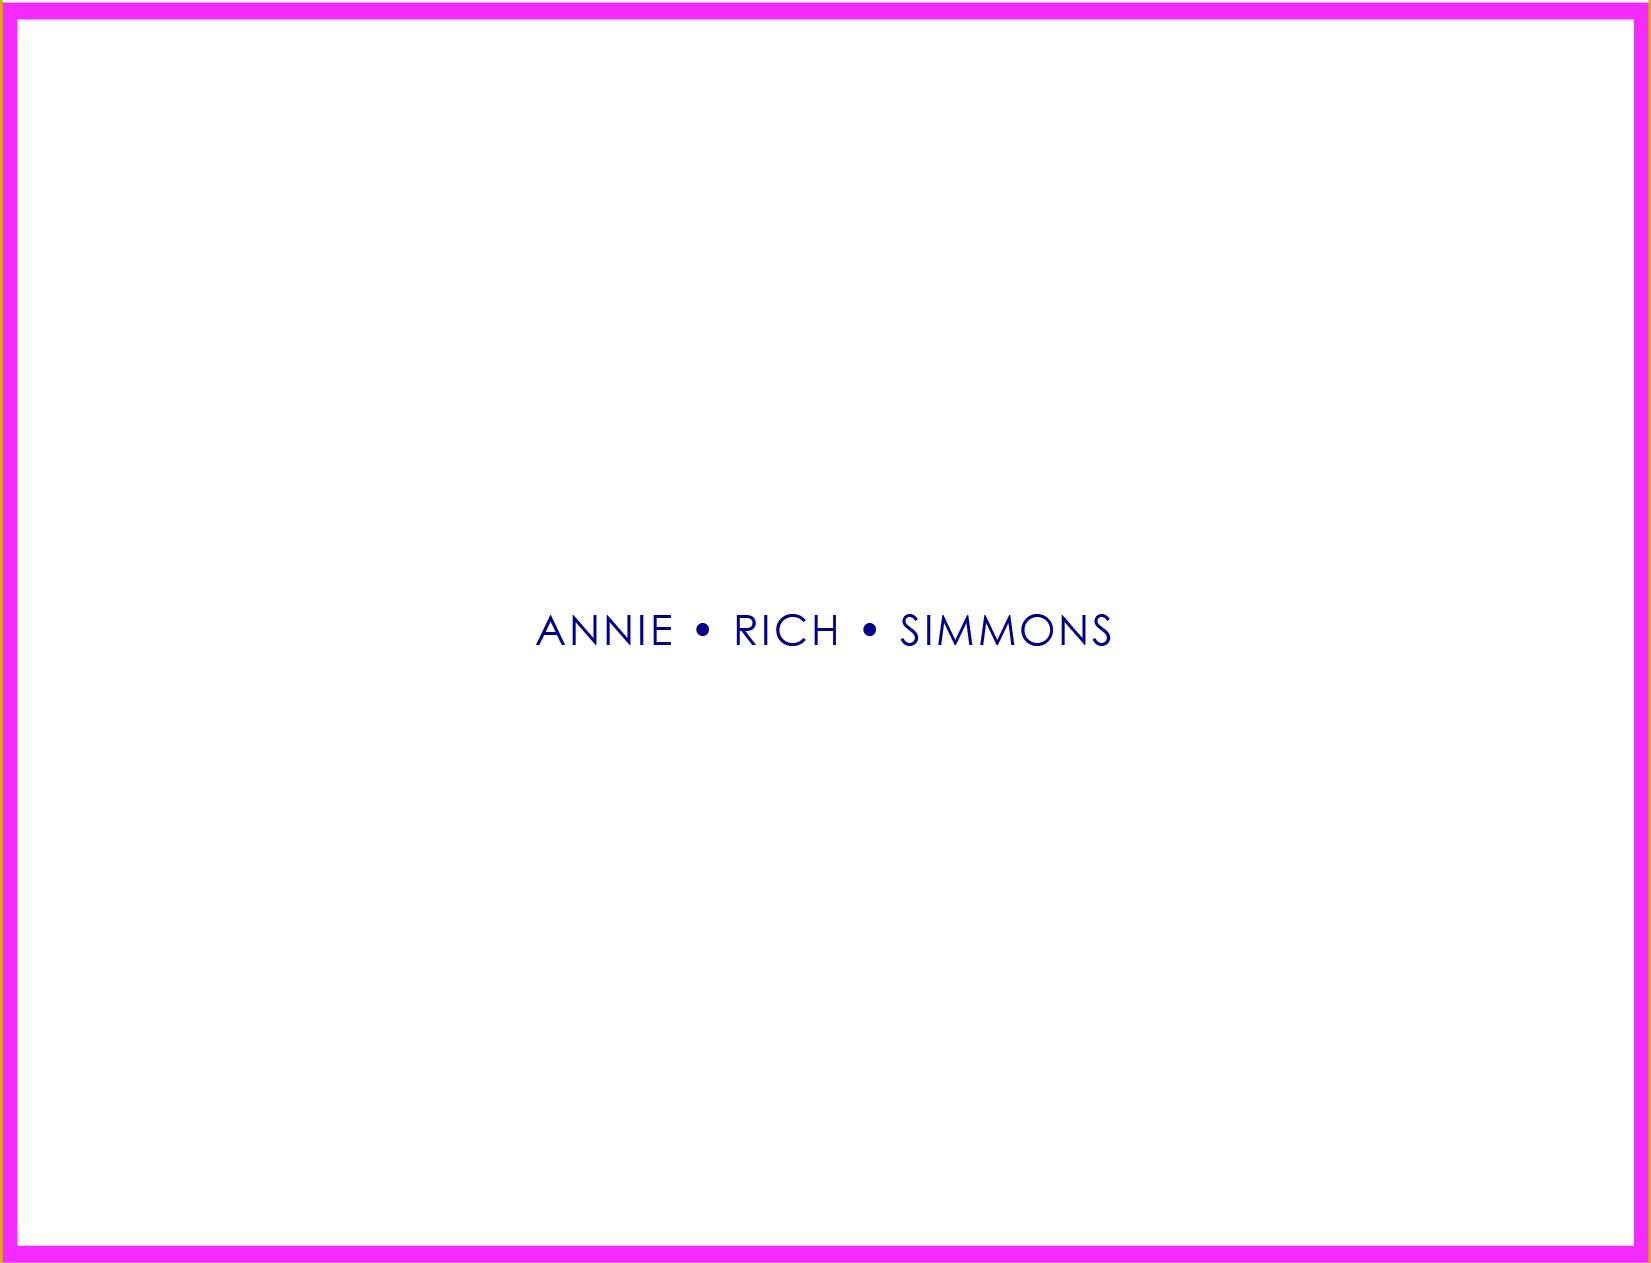 AnnieRichnotecards-01.jpg